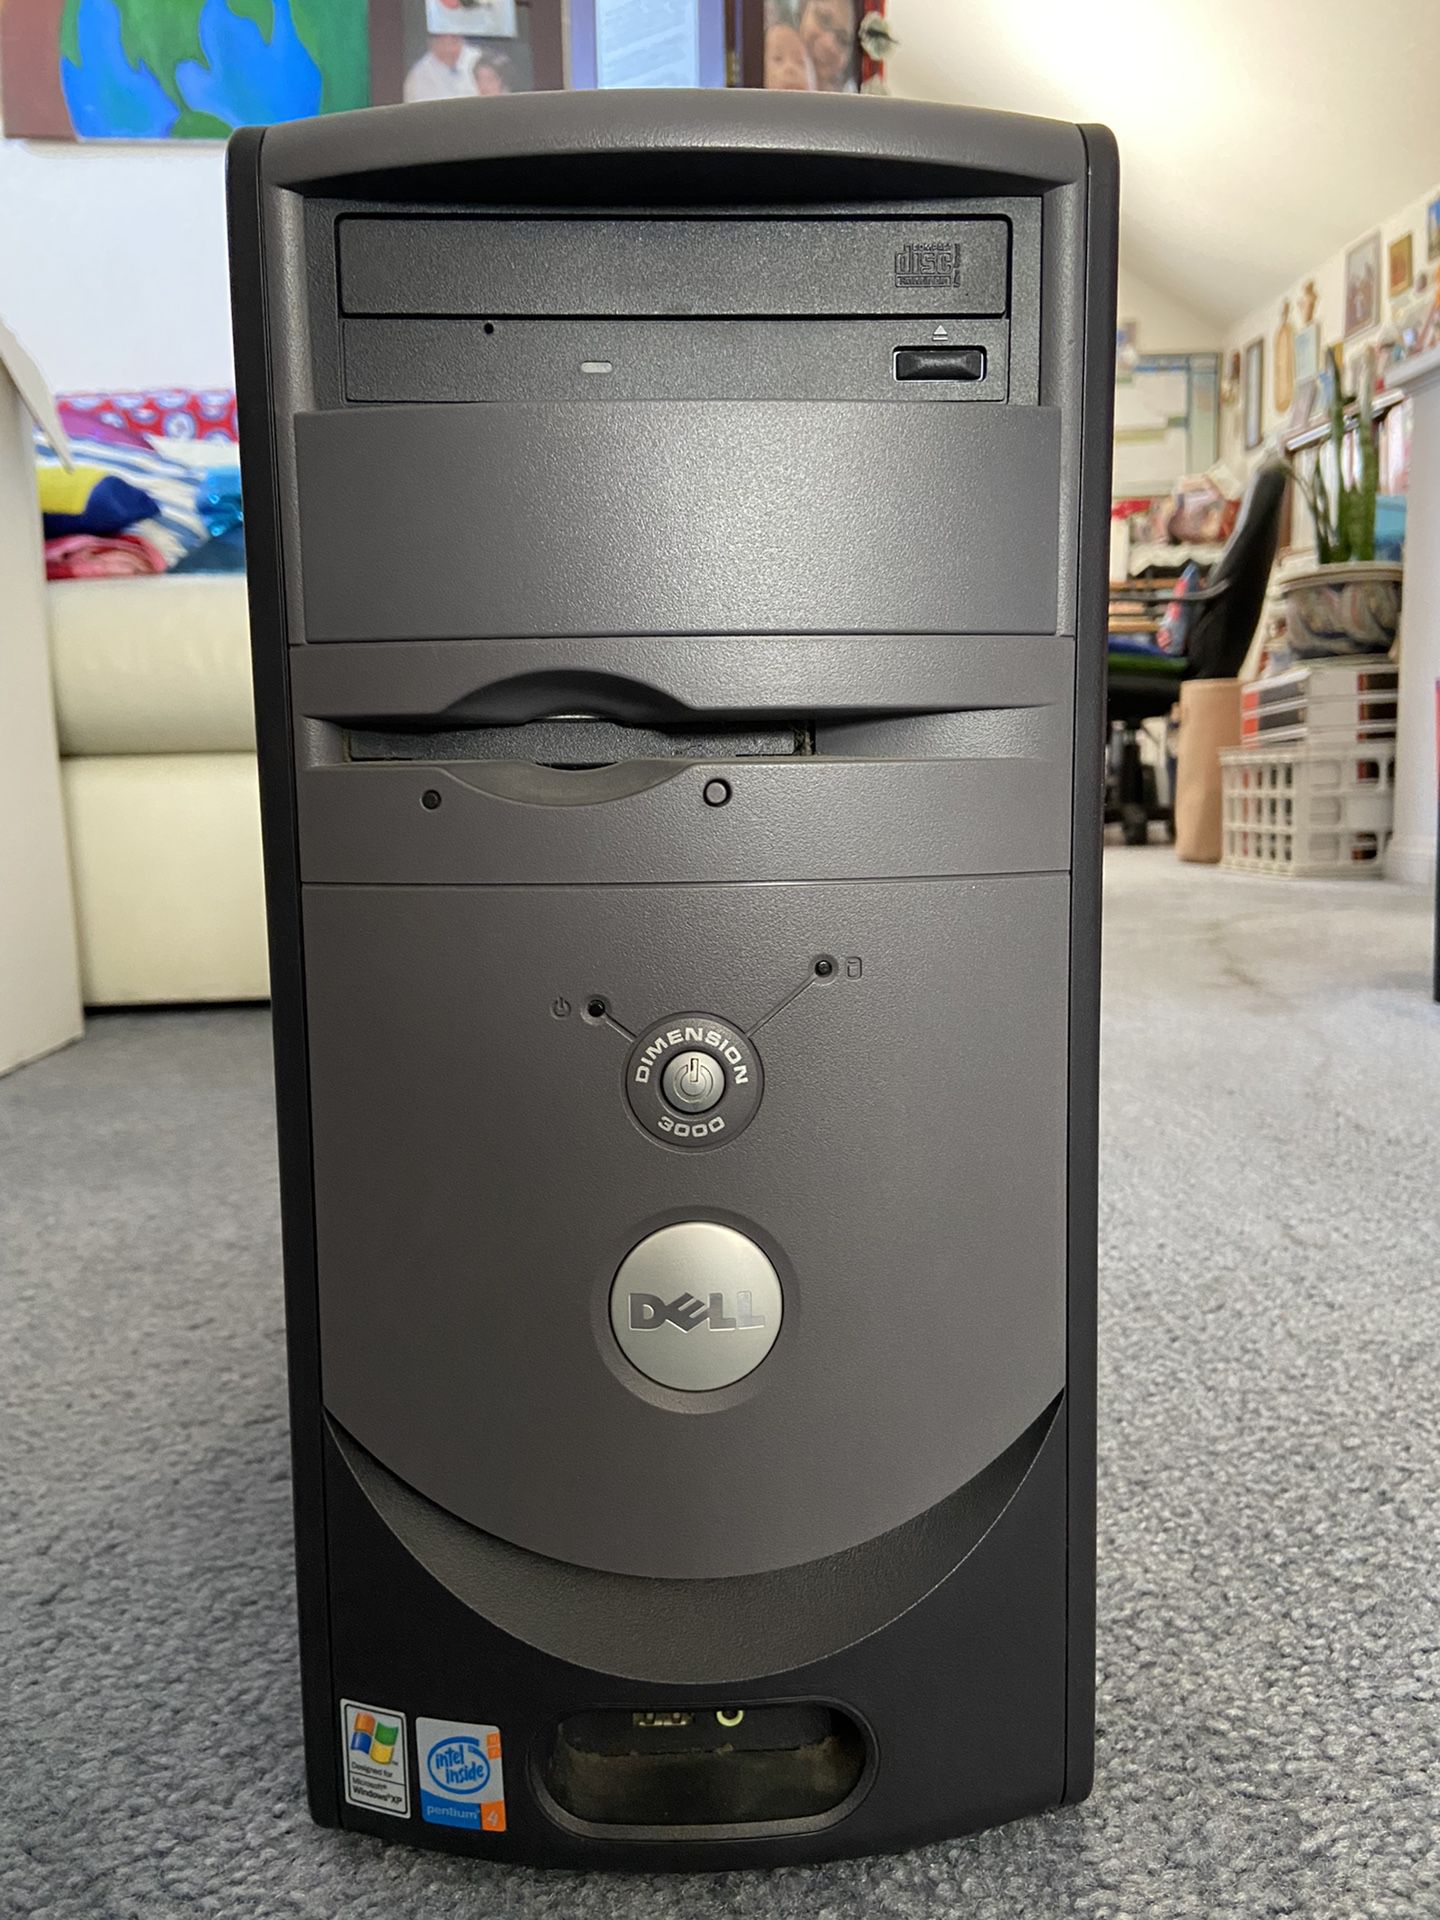 Dell Dimension 3000 Tower PC Intel Pentium 4 Windows XP Home